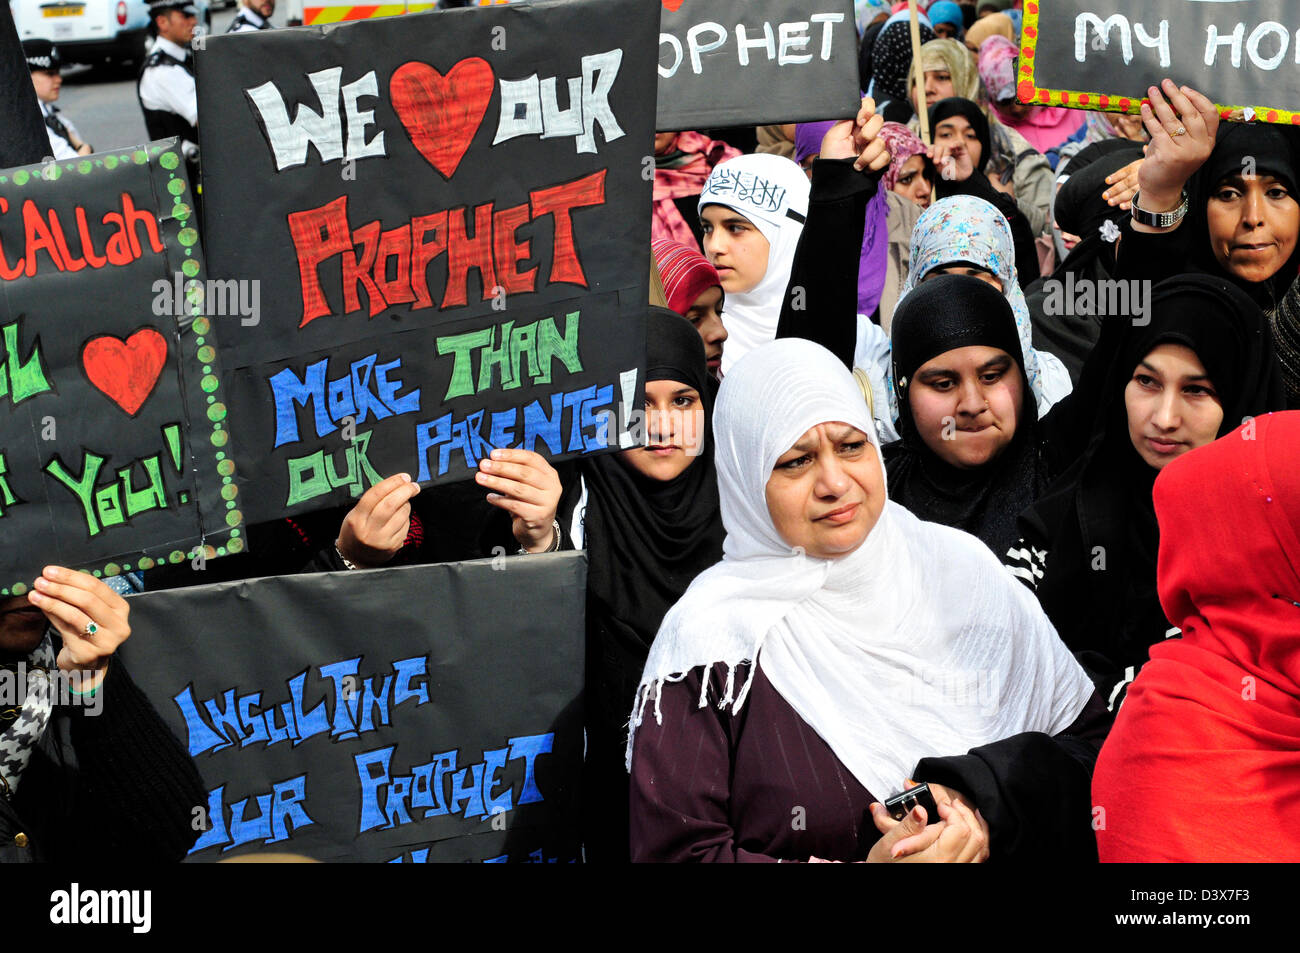 Frauen Demonstranten halten einen Banner "Wir lieben unseren Propheten mehr als unsere Eltern.", bei einem Protest gegen Anti-Islam Film. Stockfoto